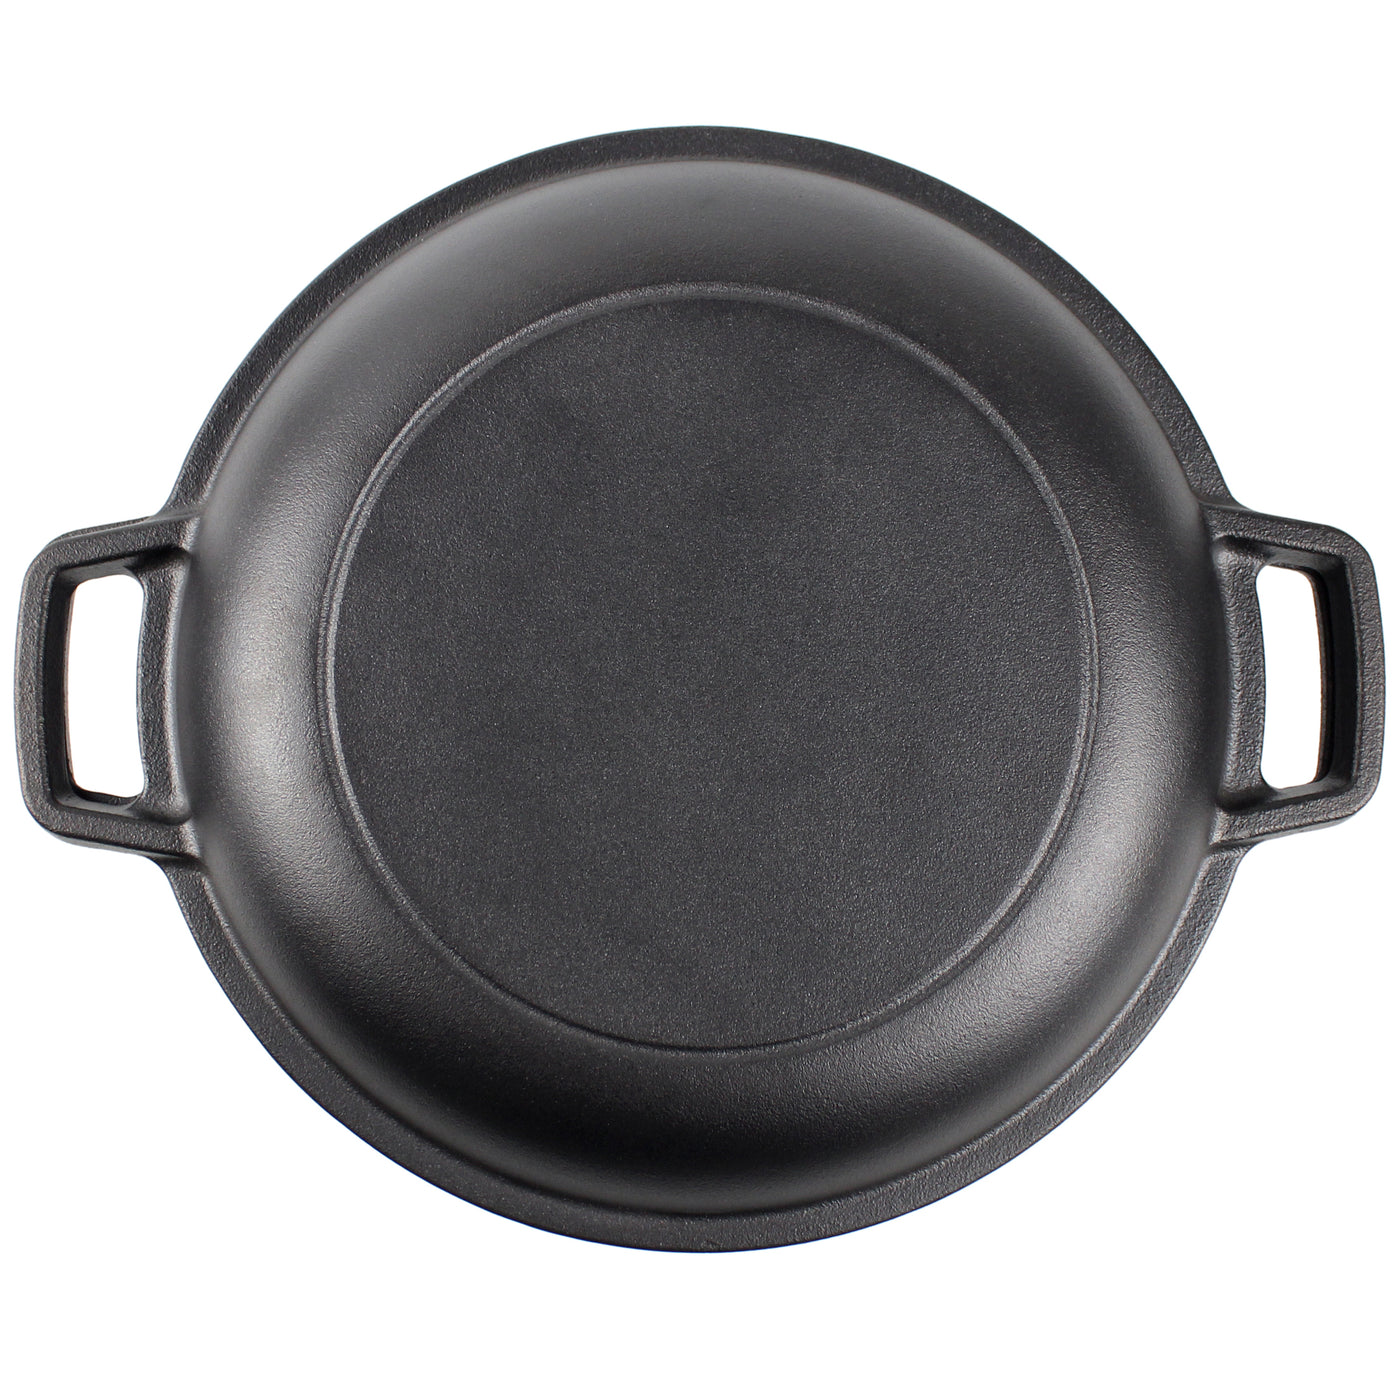 带煎锅盖的铸铁荷兰烤箱 - 直径 10.23 英寸（26 厘米），4.8 升